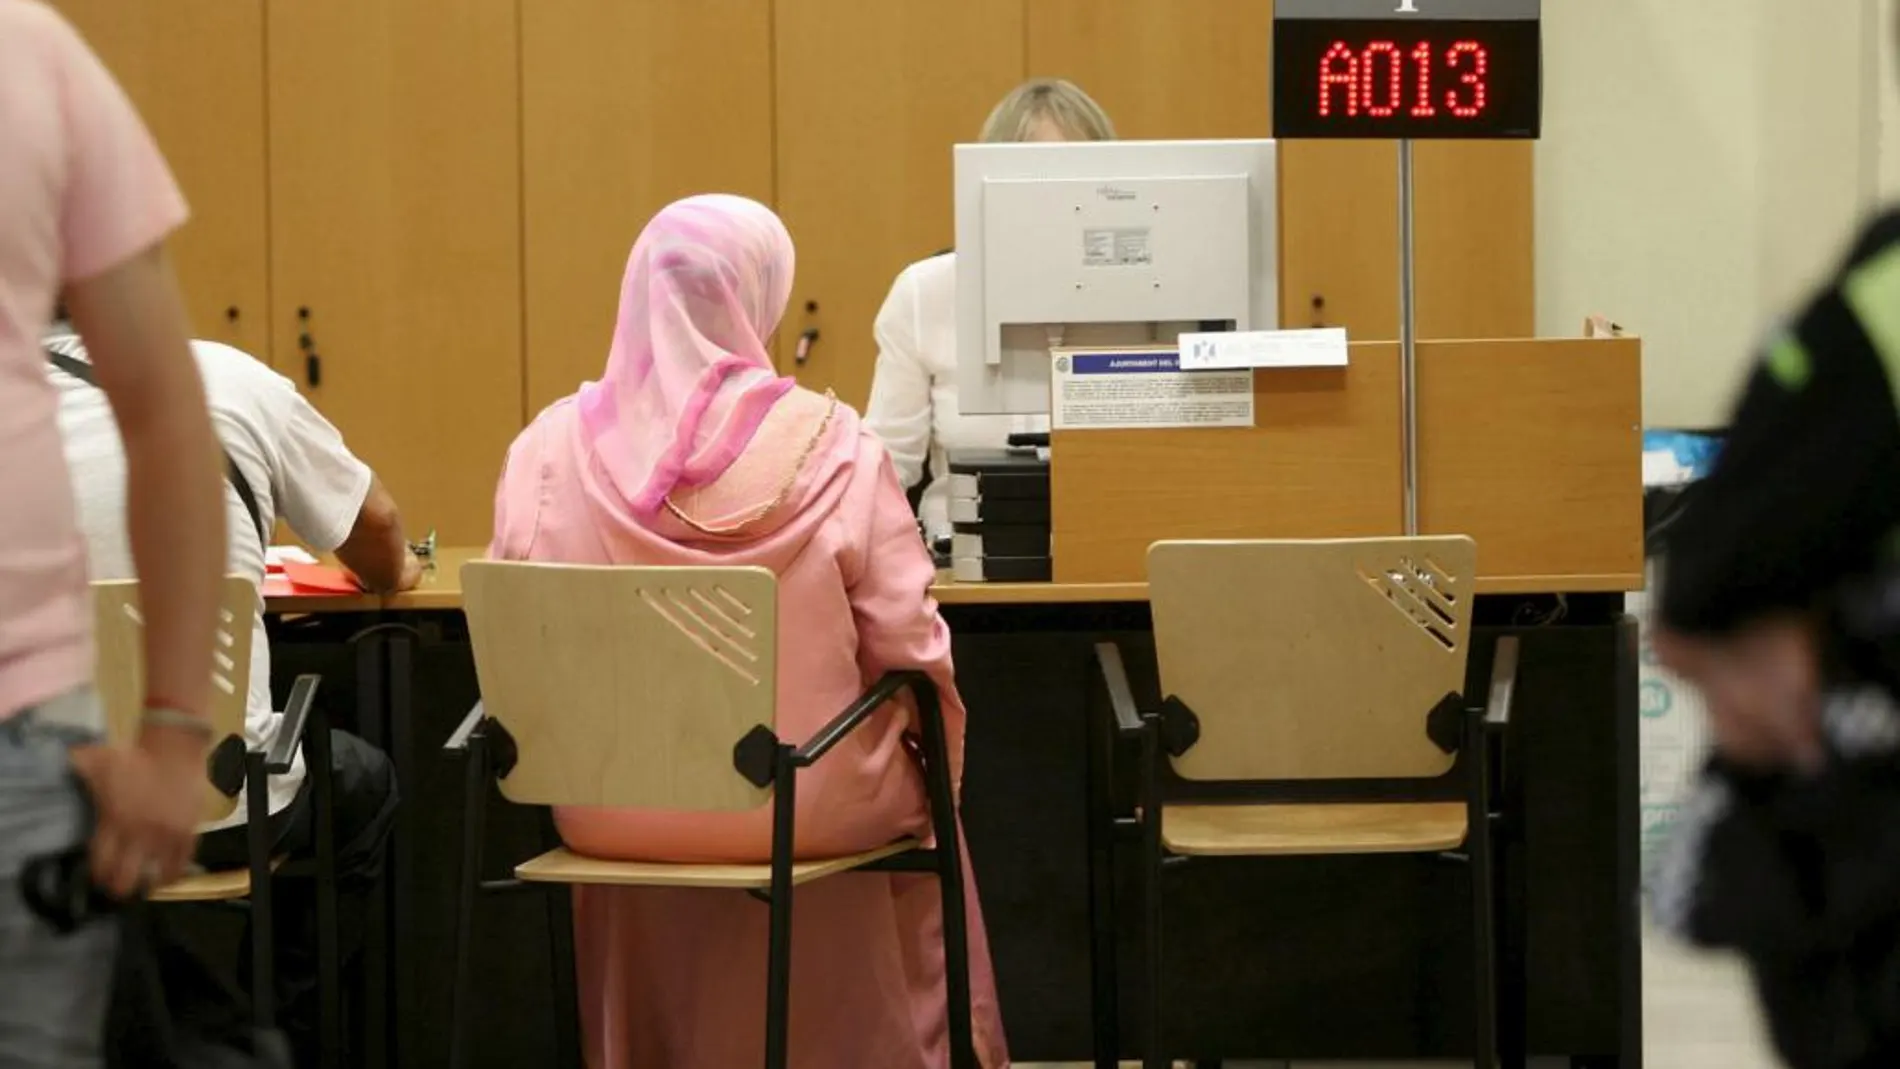 Una mujer musulmana aguarda para hacer gestiones en las instalaciones del Ayuntamiento de El Vendrell Tarragona), donde el pleno aprobó en 2010 la prohibición de usar burka y niqab.